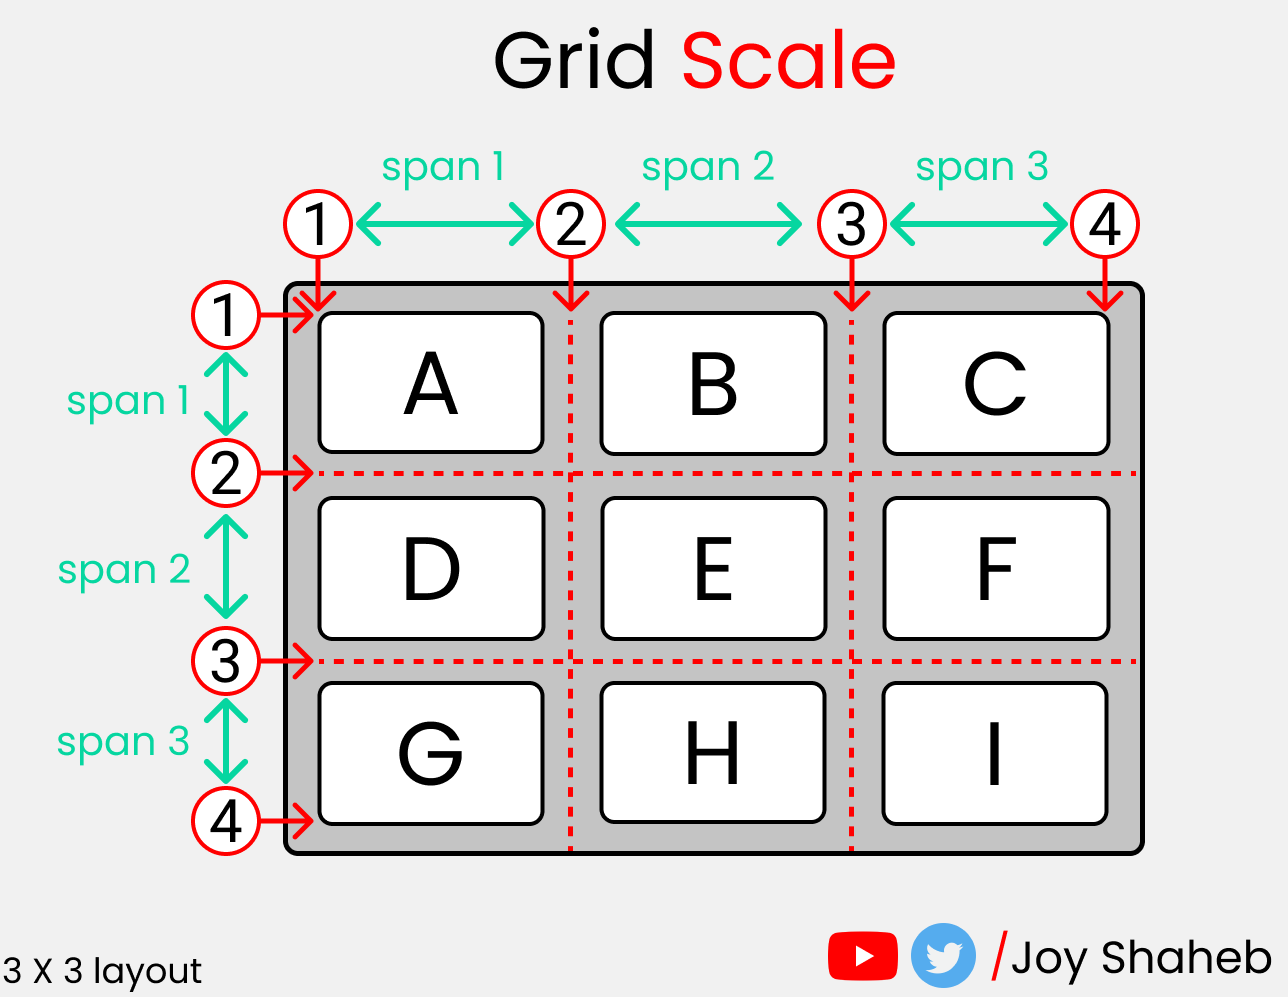 Полный самоучитель по CSS Grid со шпаргалкой22